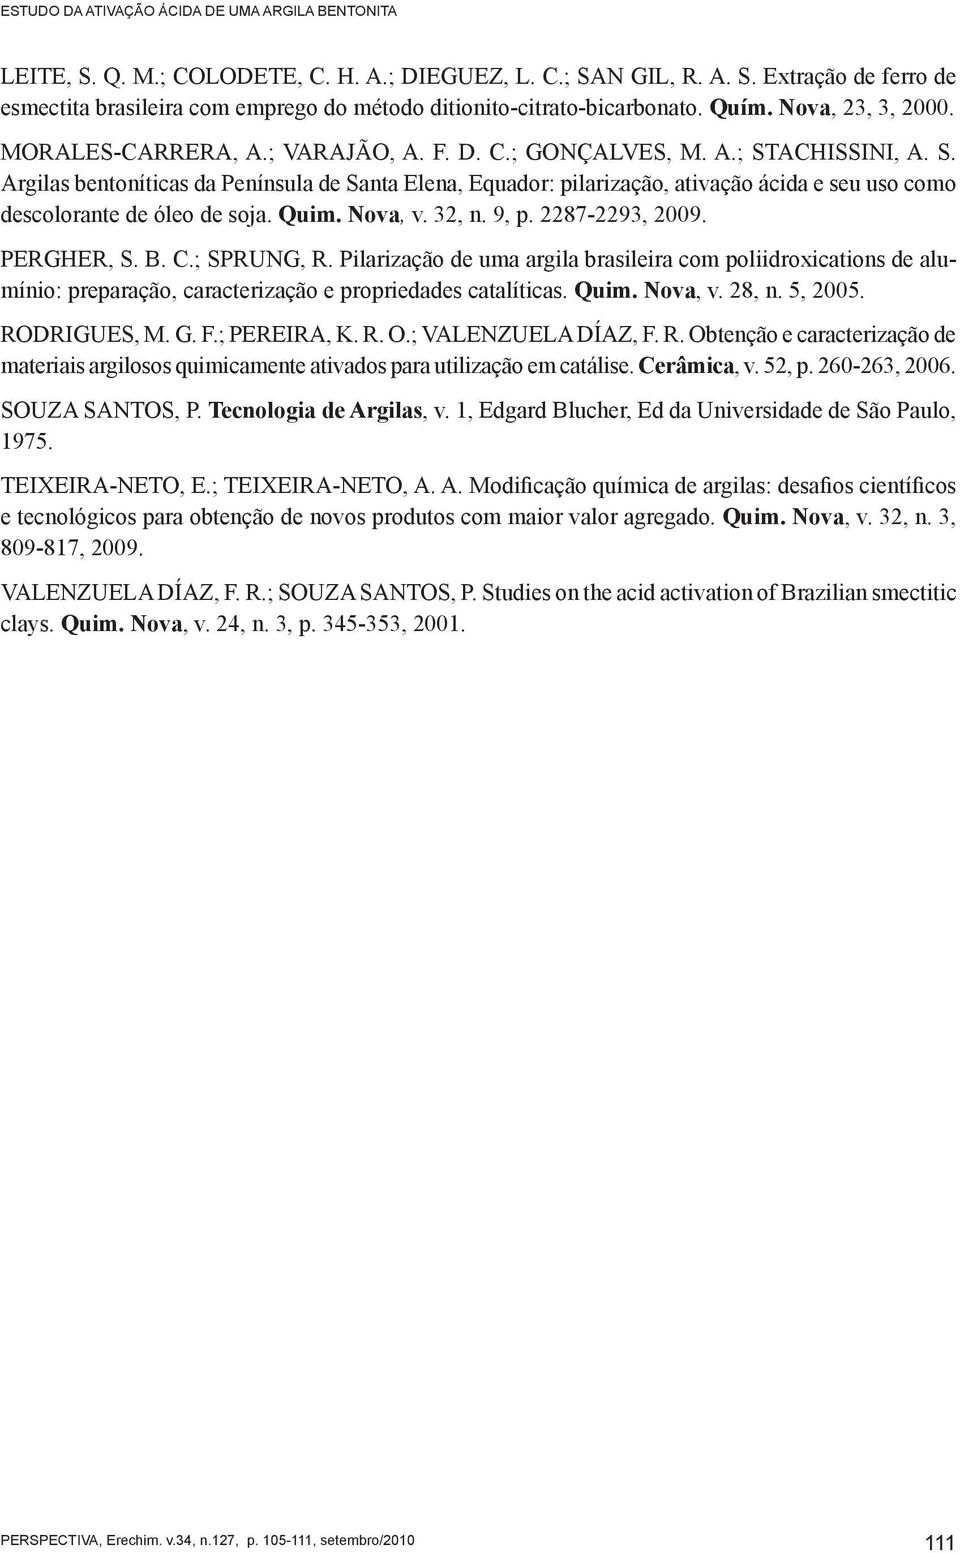 ACHISSINI, A. S. Argilas bentoníticas da Península de Santa Elena, Equador: pilarização, ativação ácida e seu uso como descolorante de óleo de soja. Quim. Nova, v. 32, n. 9, p. 2287-2293, 2009.